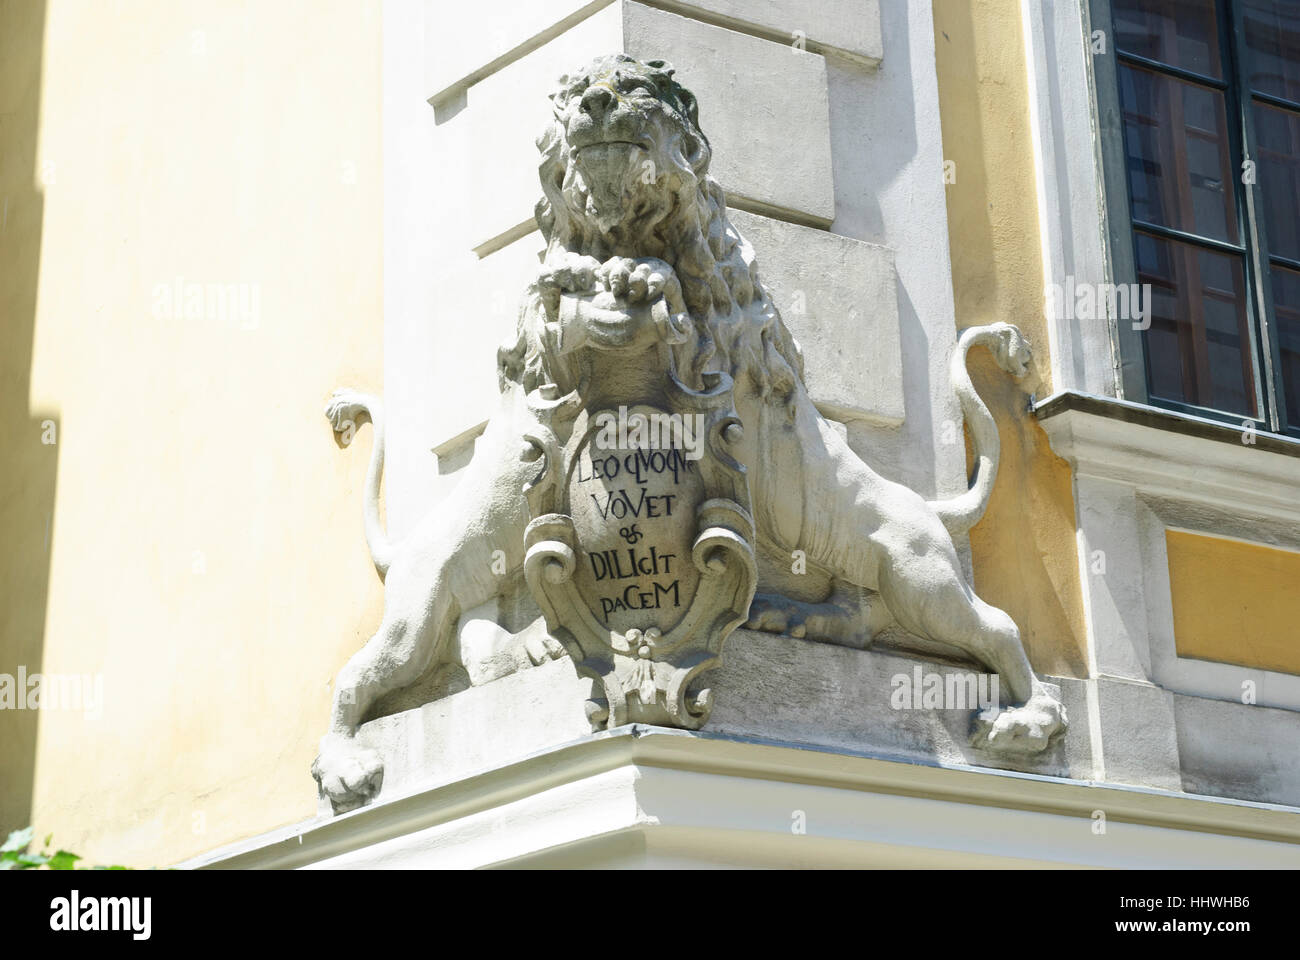 Wien, Vienna: quarter Spittelberg; Spittelberggasse, lion at dwelling house, 07., Wien, Austria Stock Photo